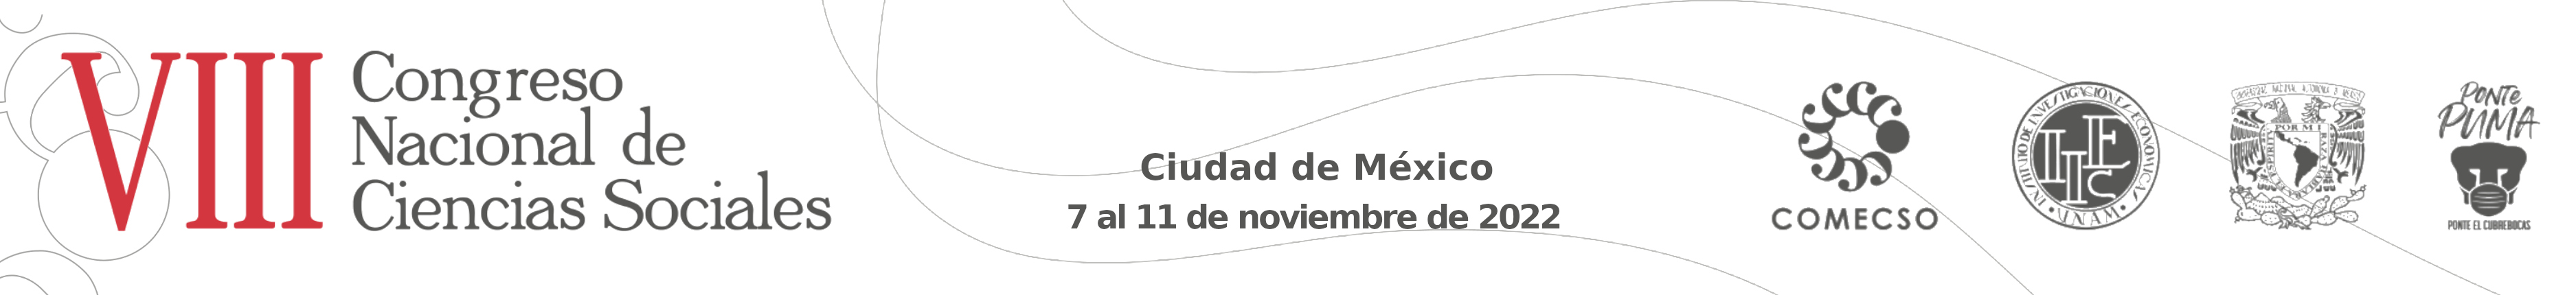 VIII Congreso Nacional de Ciencias Sociales - Ciudad de México, 7 al 11 de noviembre, 2022